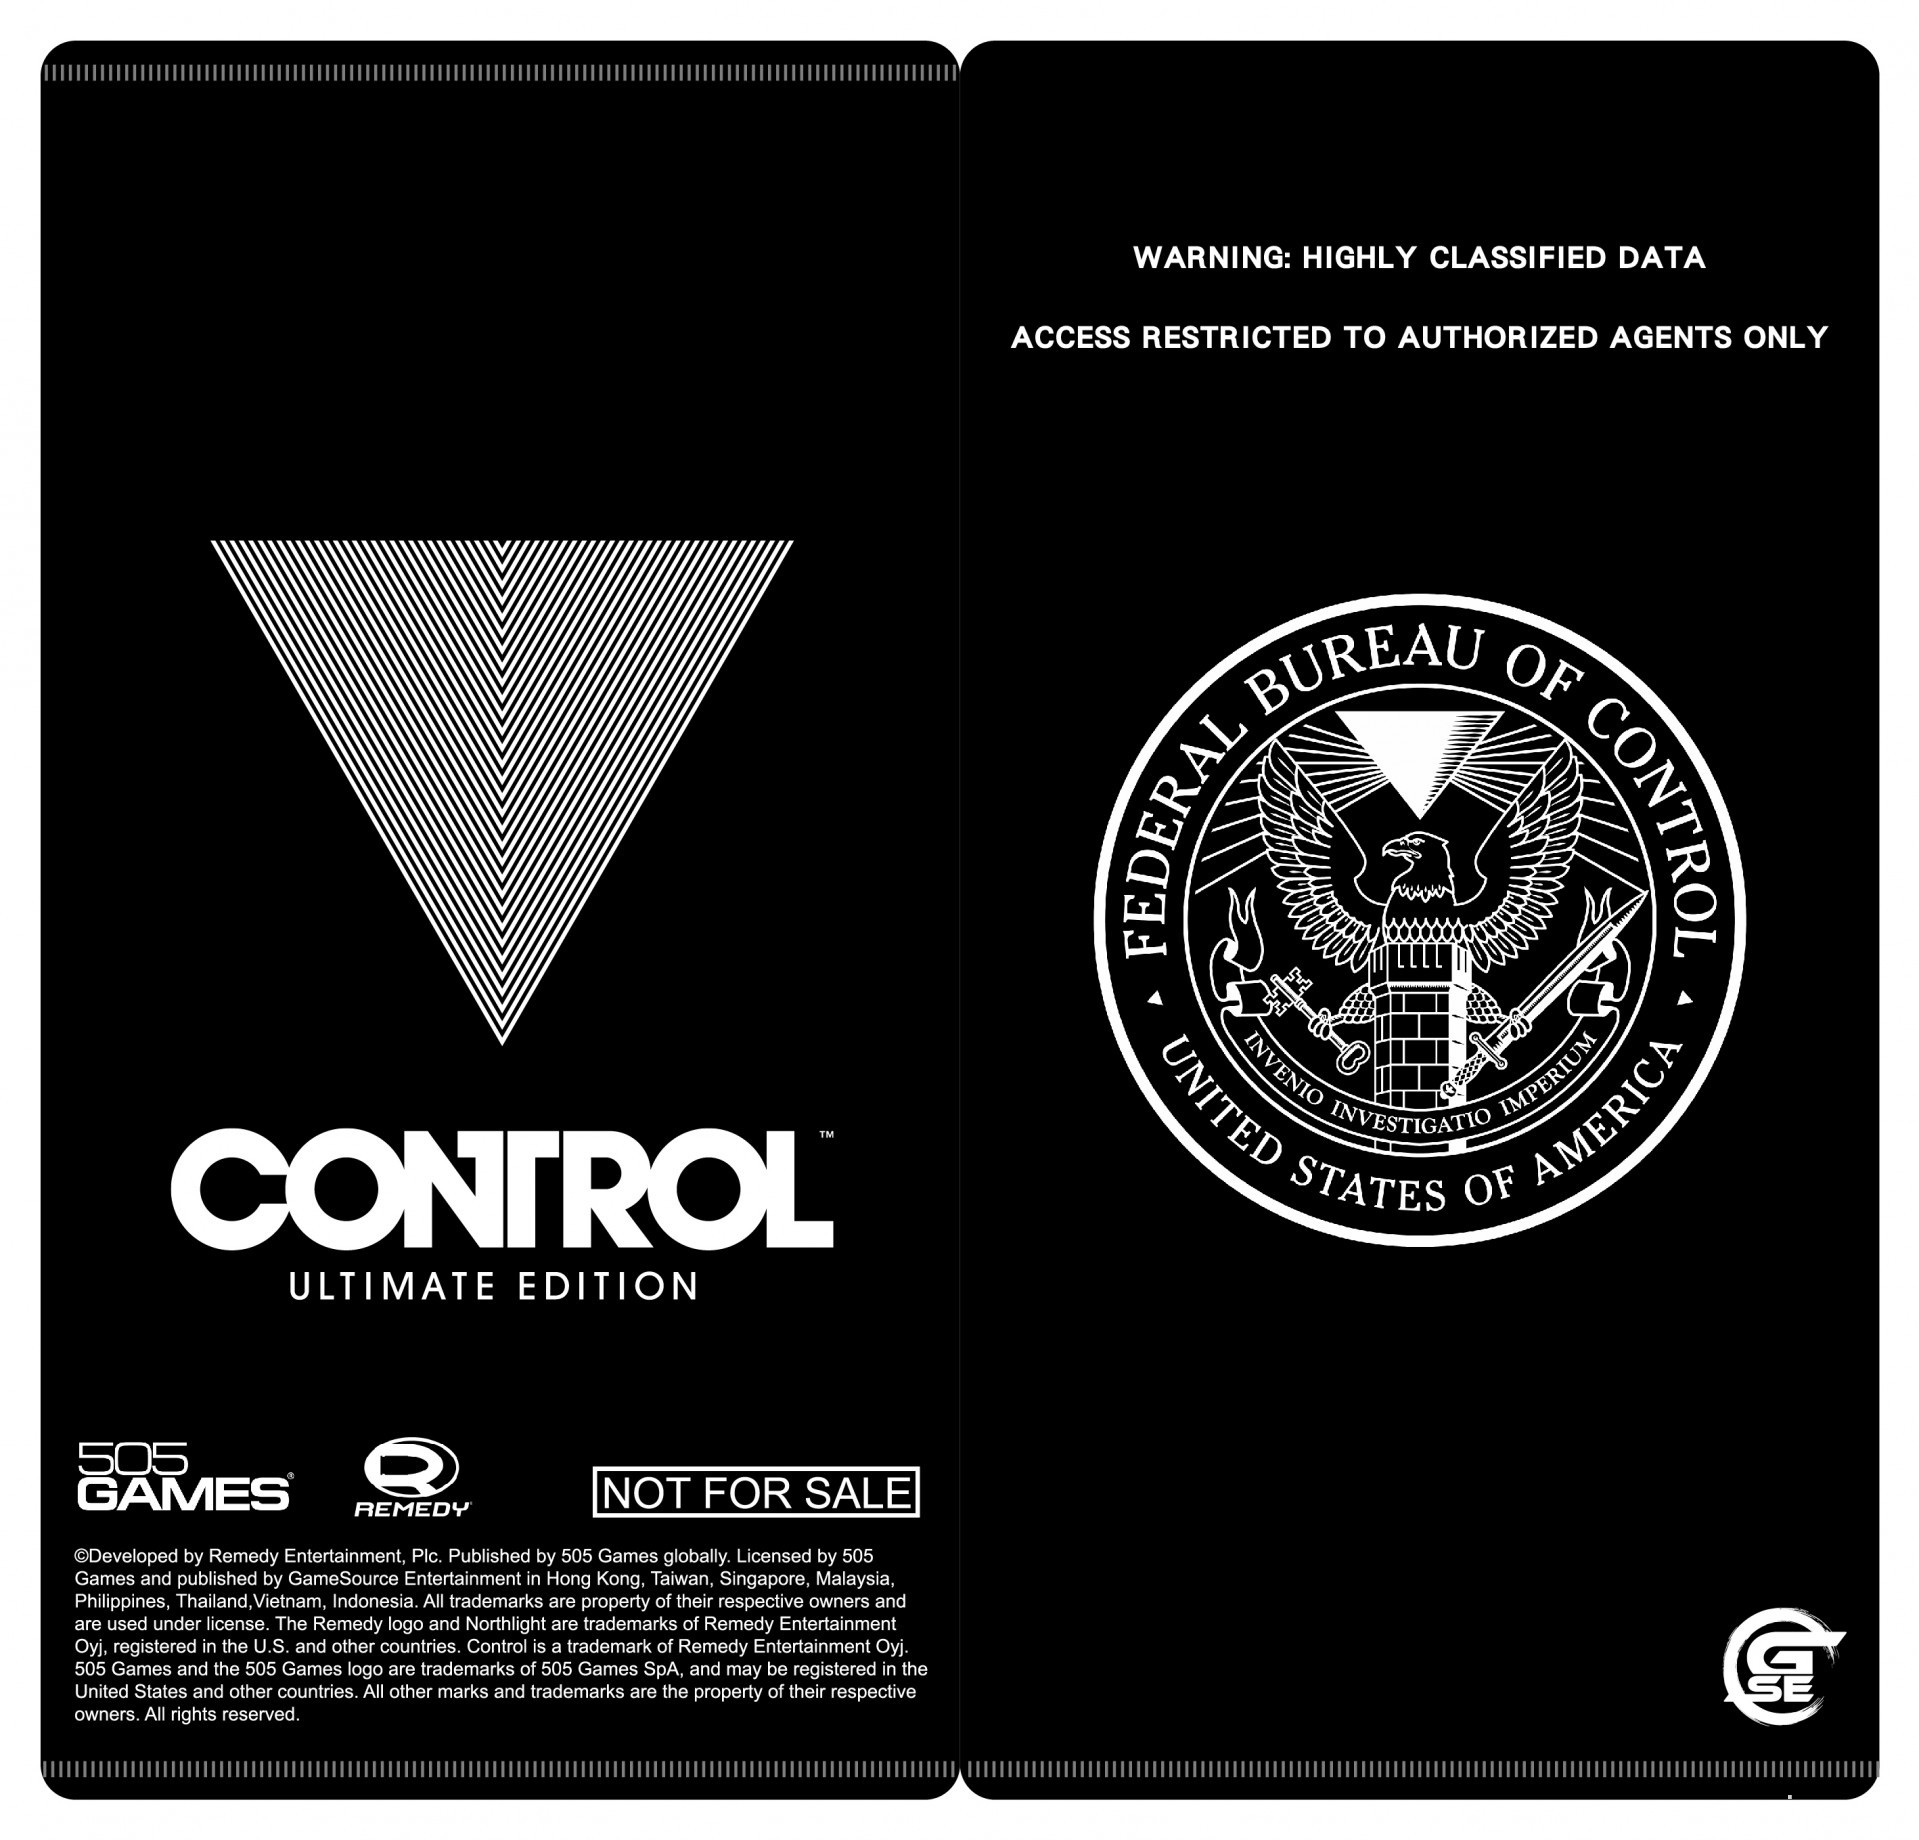 《控制 CONTROL 终极版》即将推出亚洲完全数量限定版